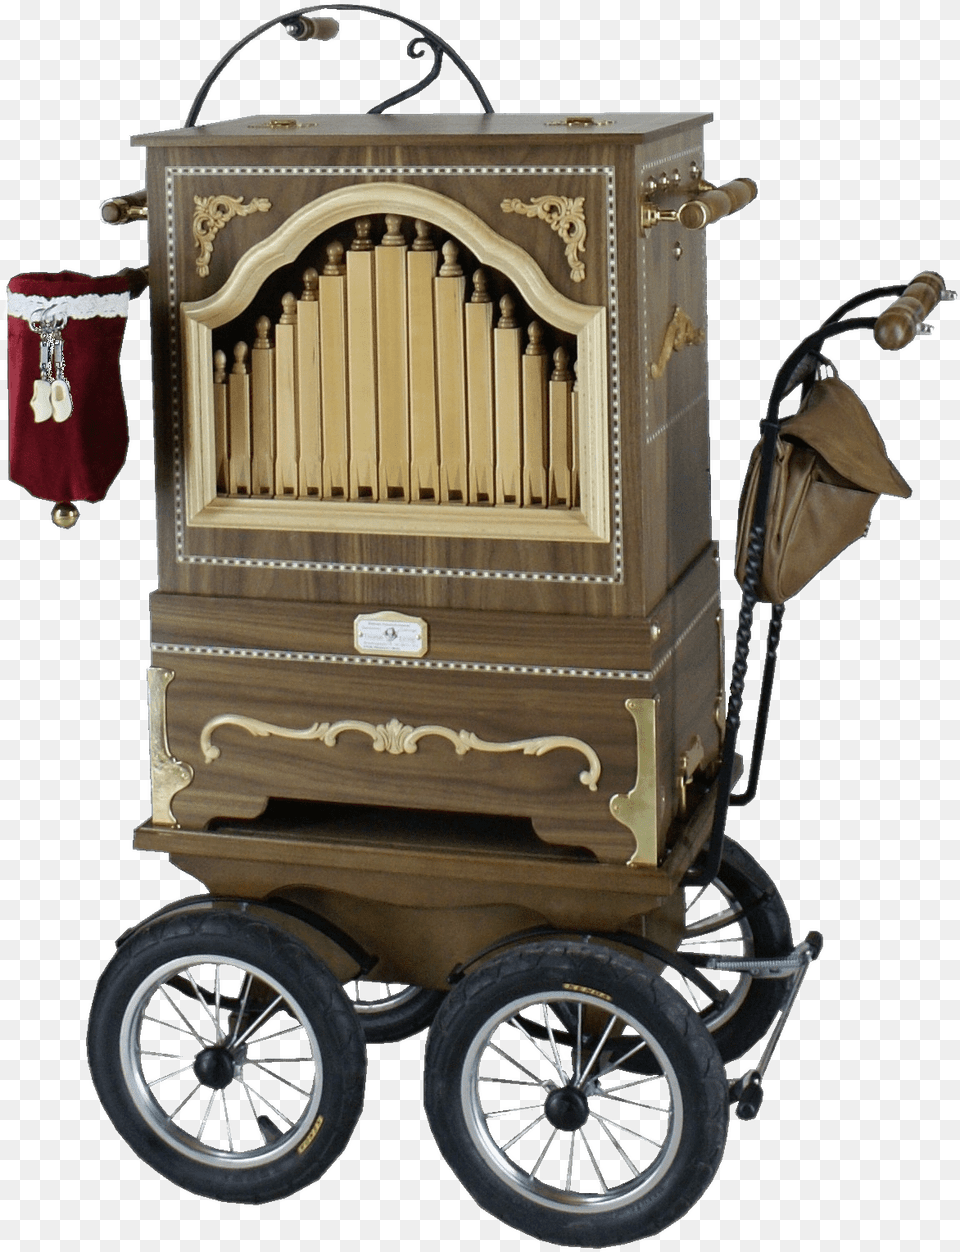 Barrel Organ On Kart Barrel Organ, Wheel, Machine, Transportation, Vehicle Png Image